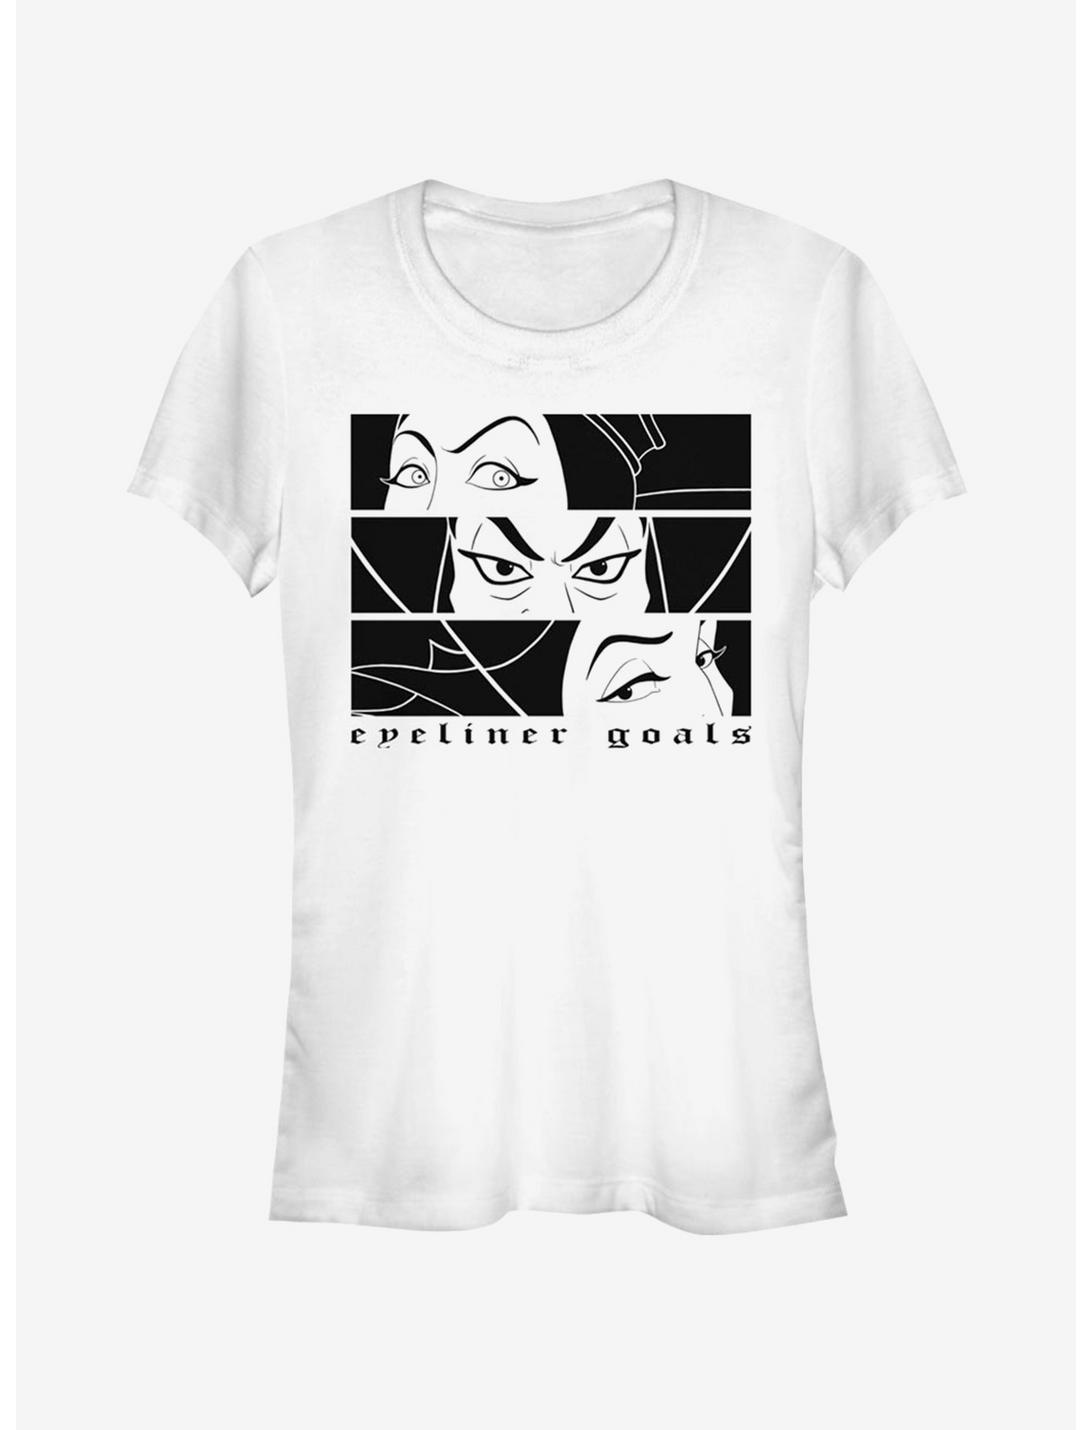 Disney Villains Villian Eyeliner Goals Girls T-Shirt, WHITE, hi-res